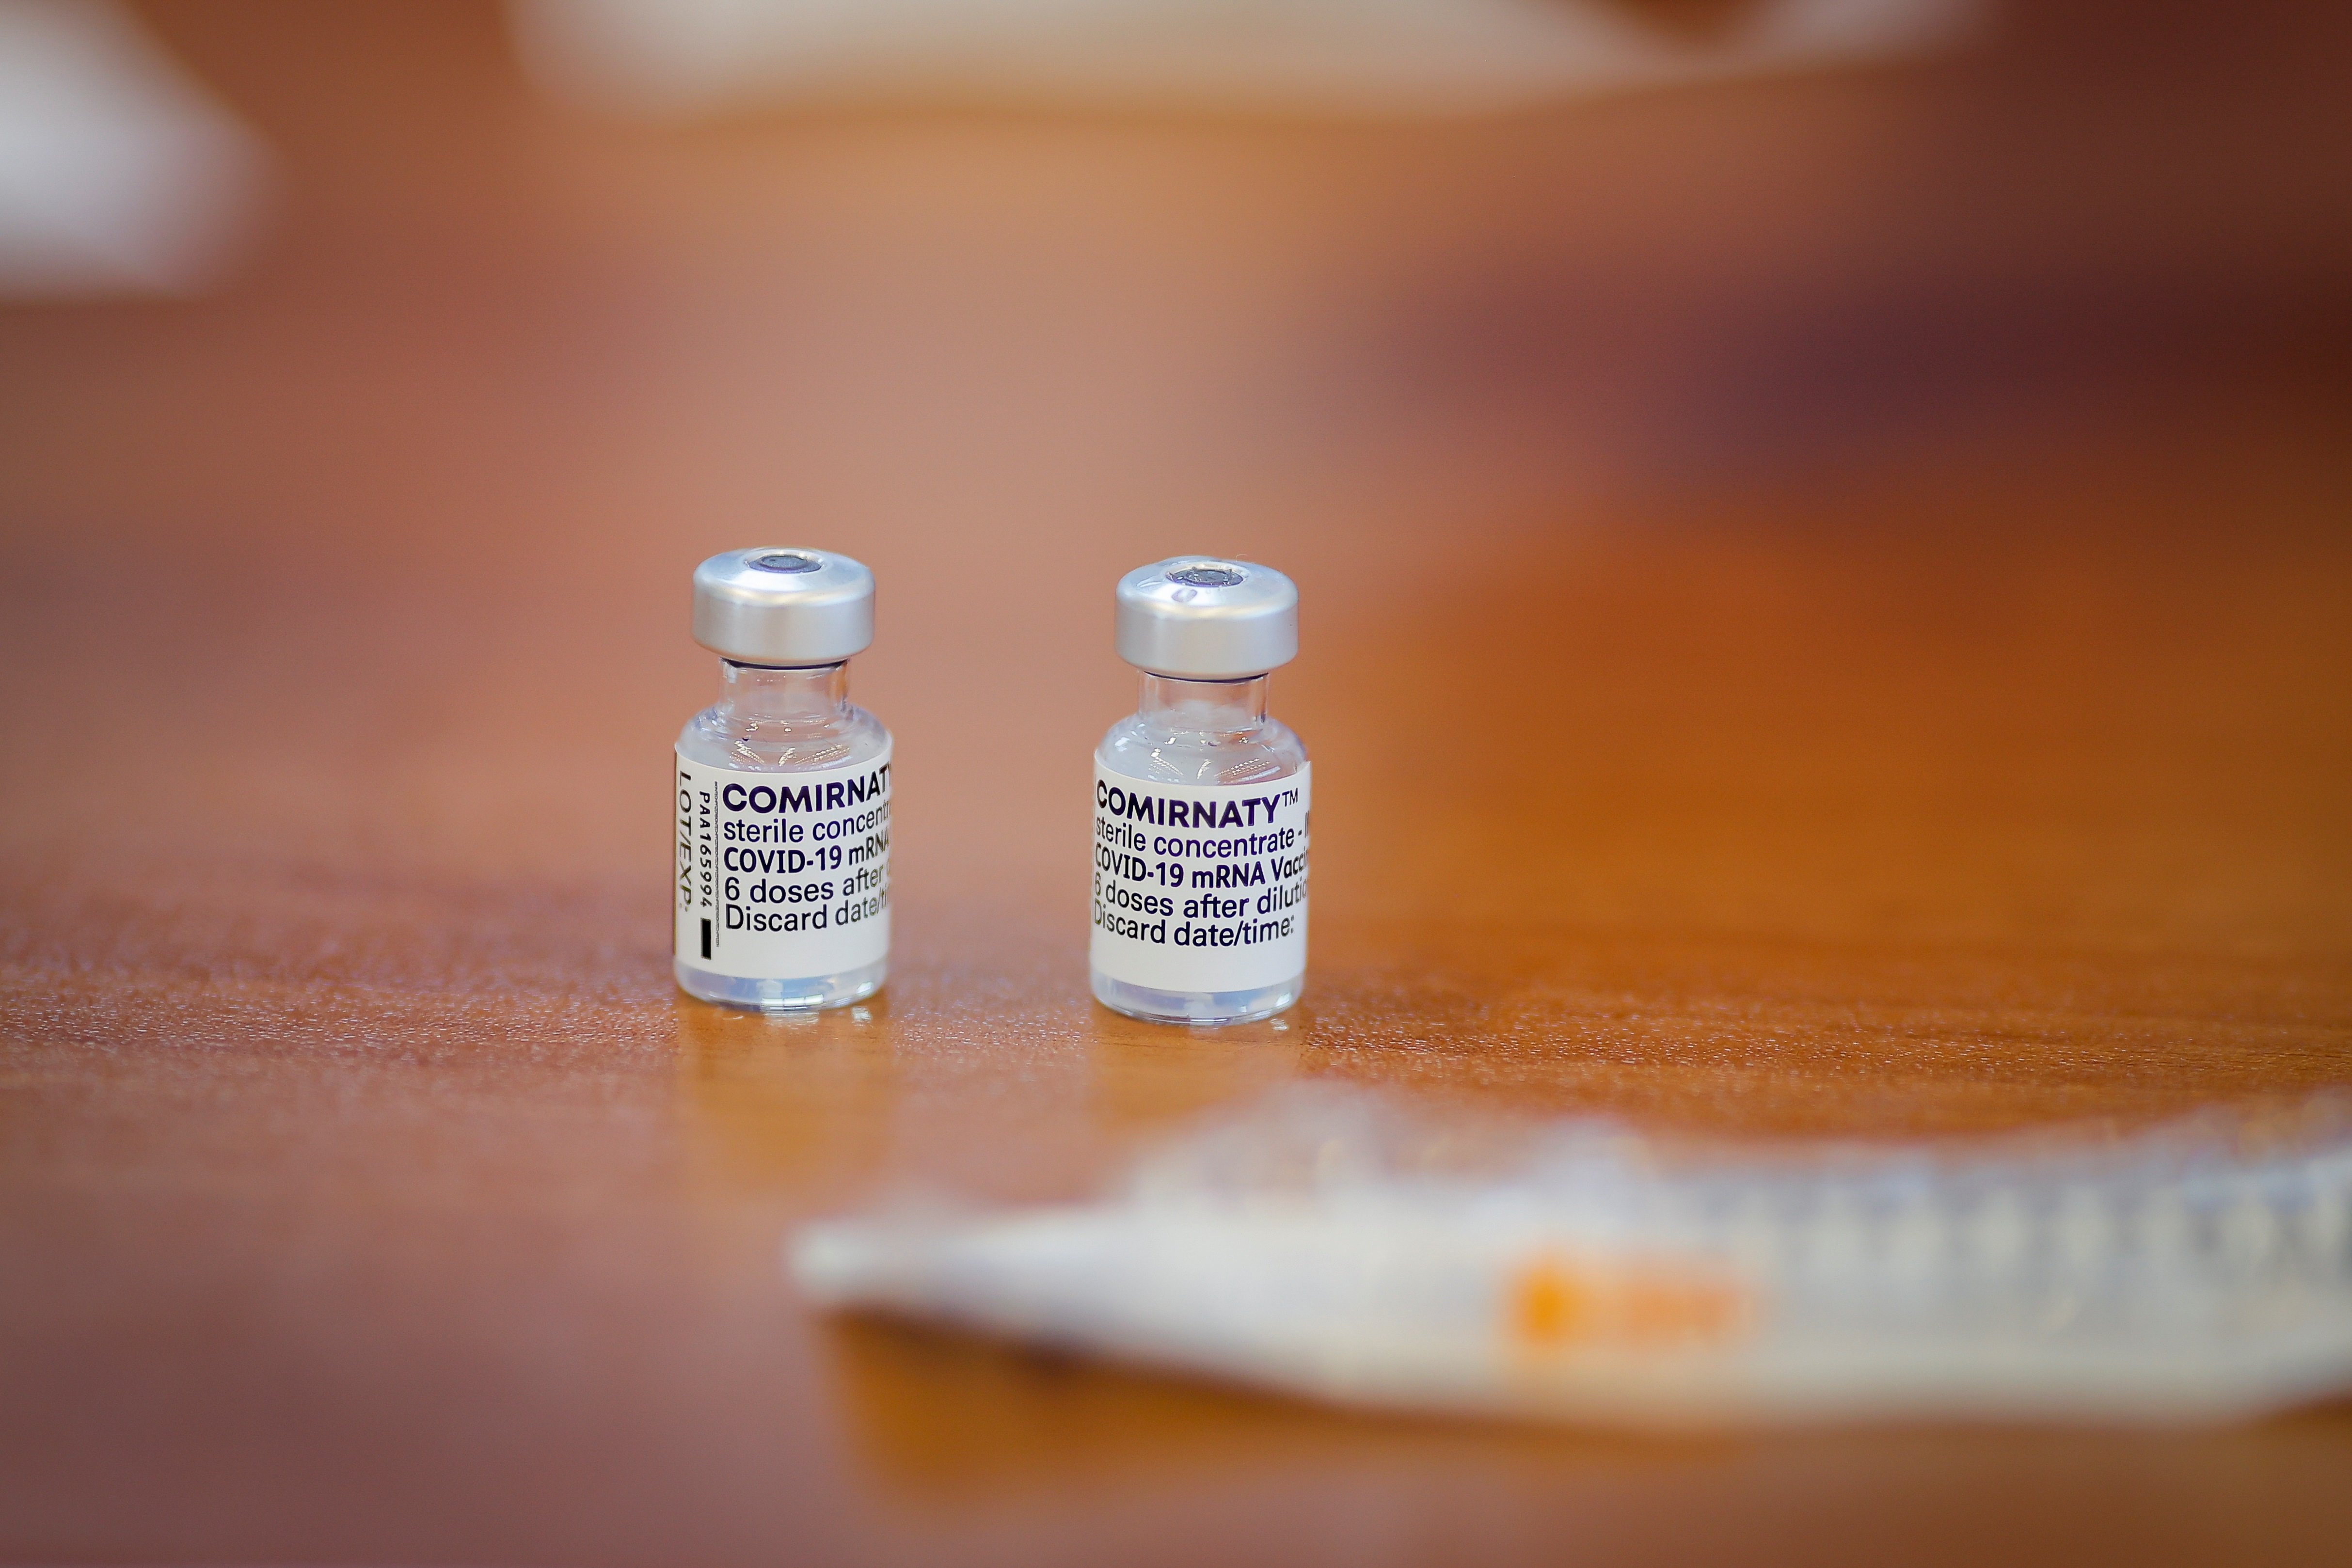 Combinar vacunes implica més efectes secundaris lleus, segons un estudi